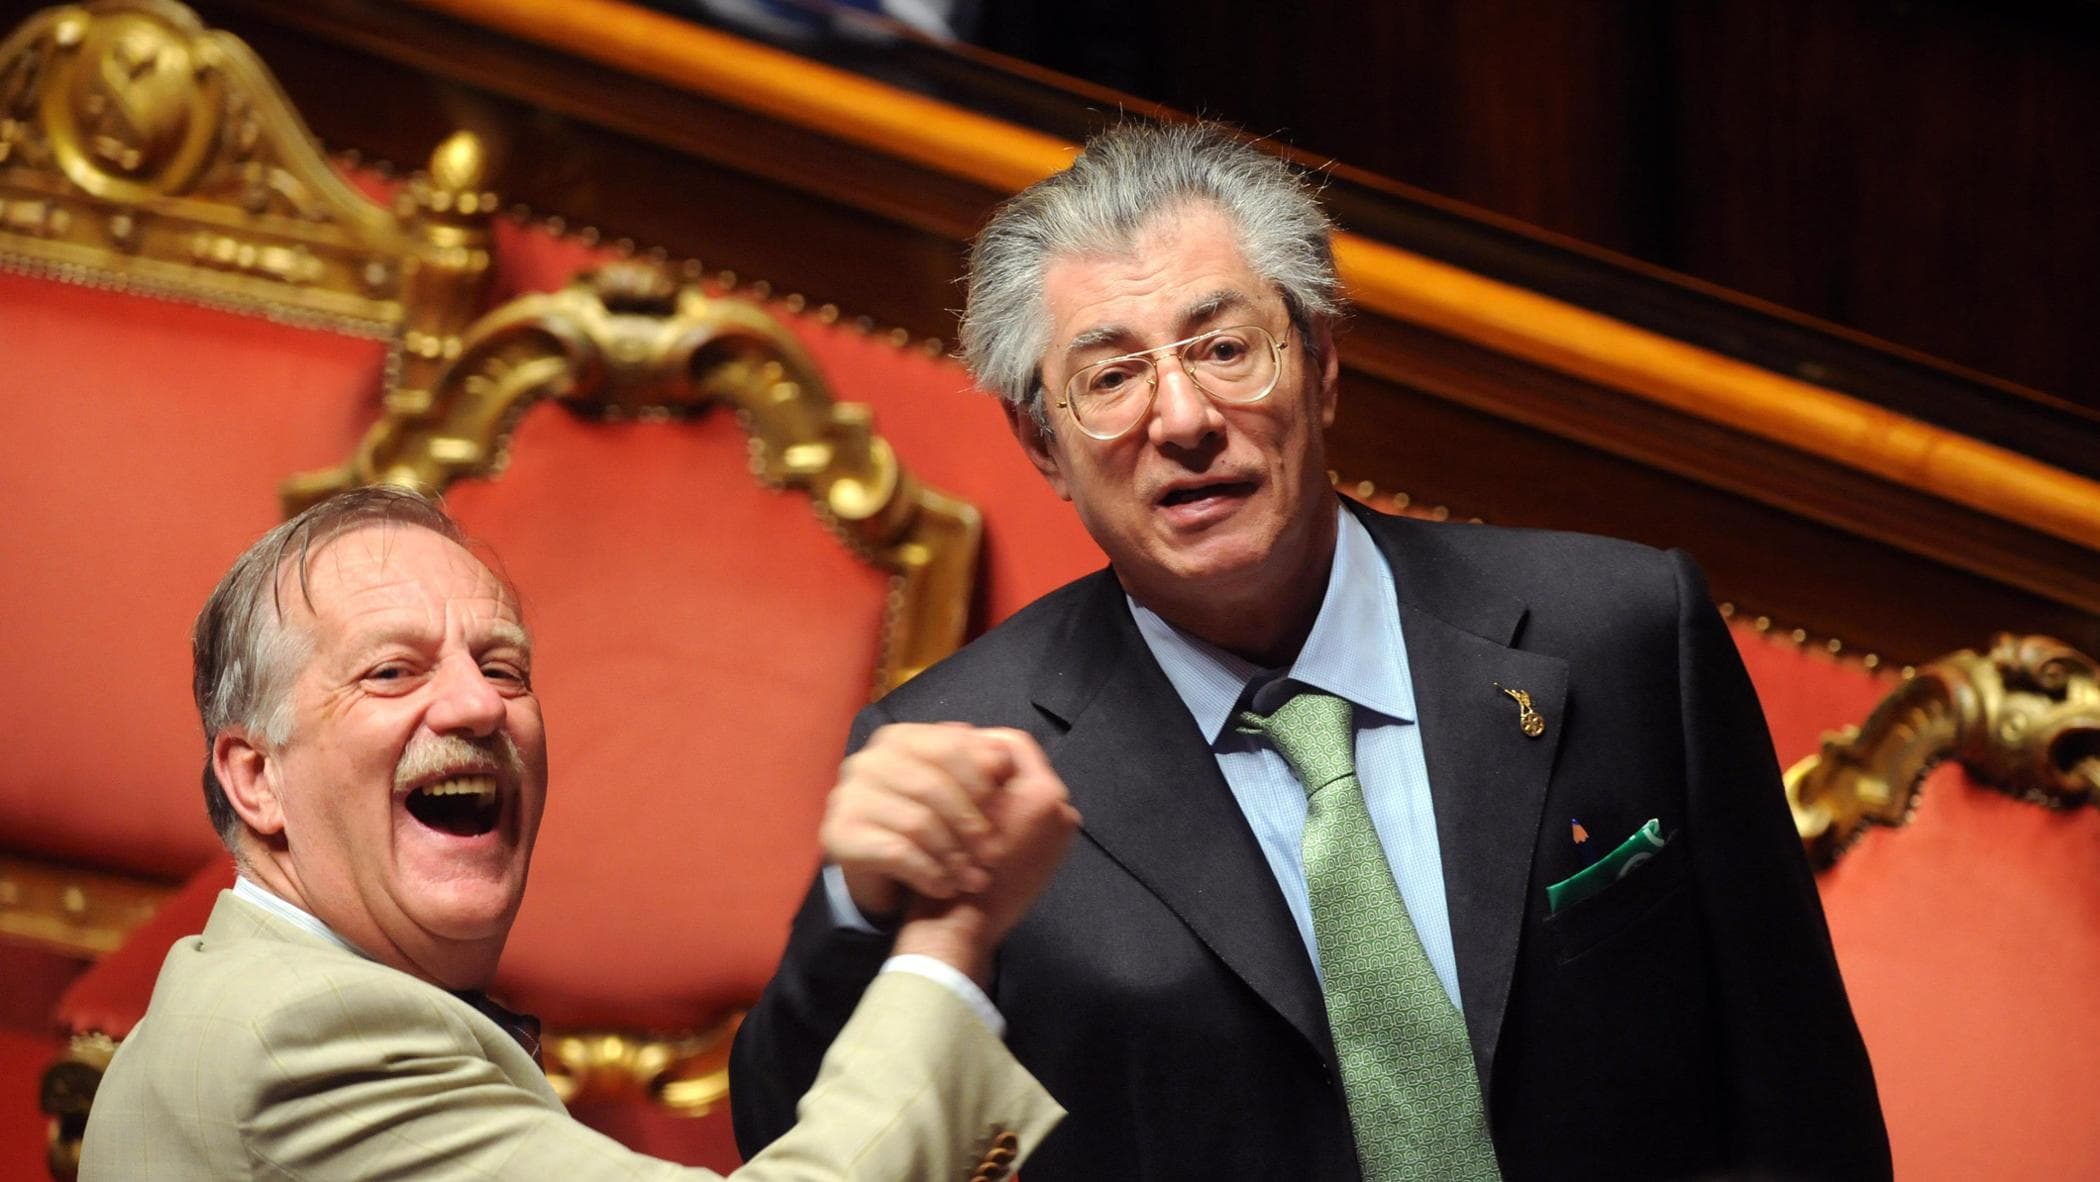 Il fondatore della Lega attacca Salvini: "E' un incapace, il congresso va fatto prima del voto"